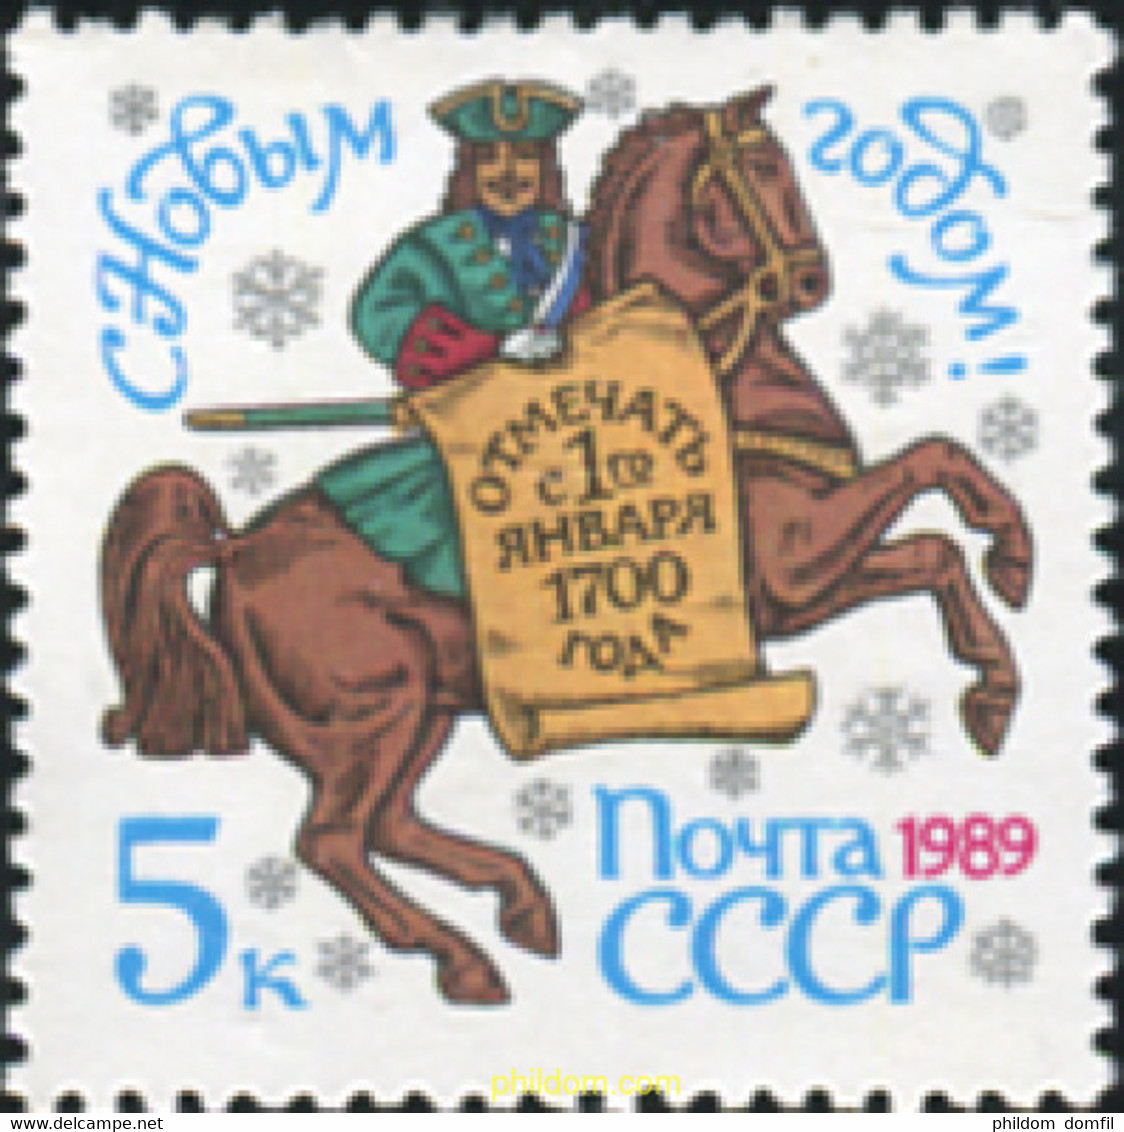 63522 MNH UNION SOVIETICA 1988 AÑO NUEVO - Collezioni